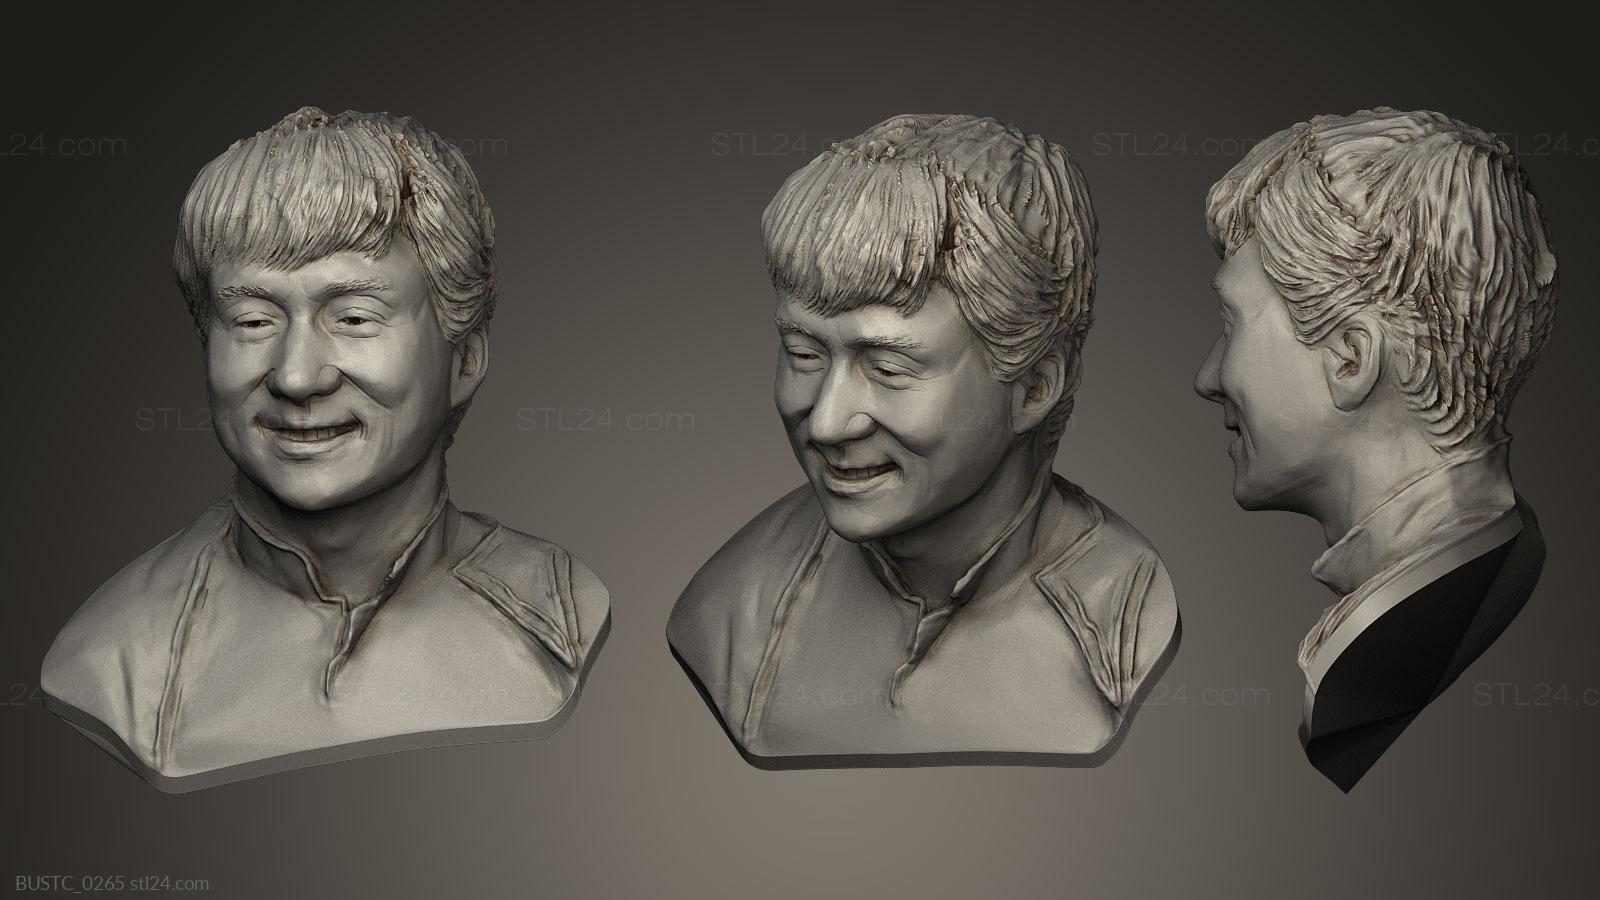 Бюсты и барельефы известных личностей (Джеки Чан, BUSTC_0265) 3D модель для ЧПУ станка